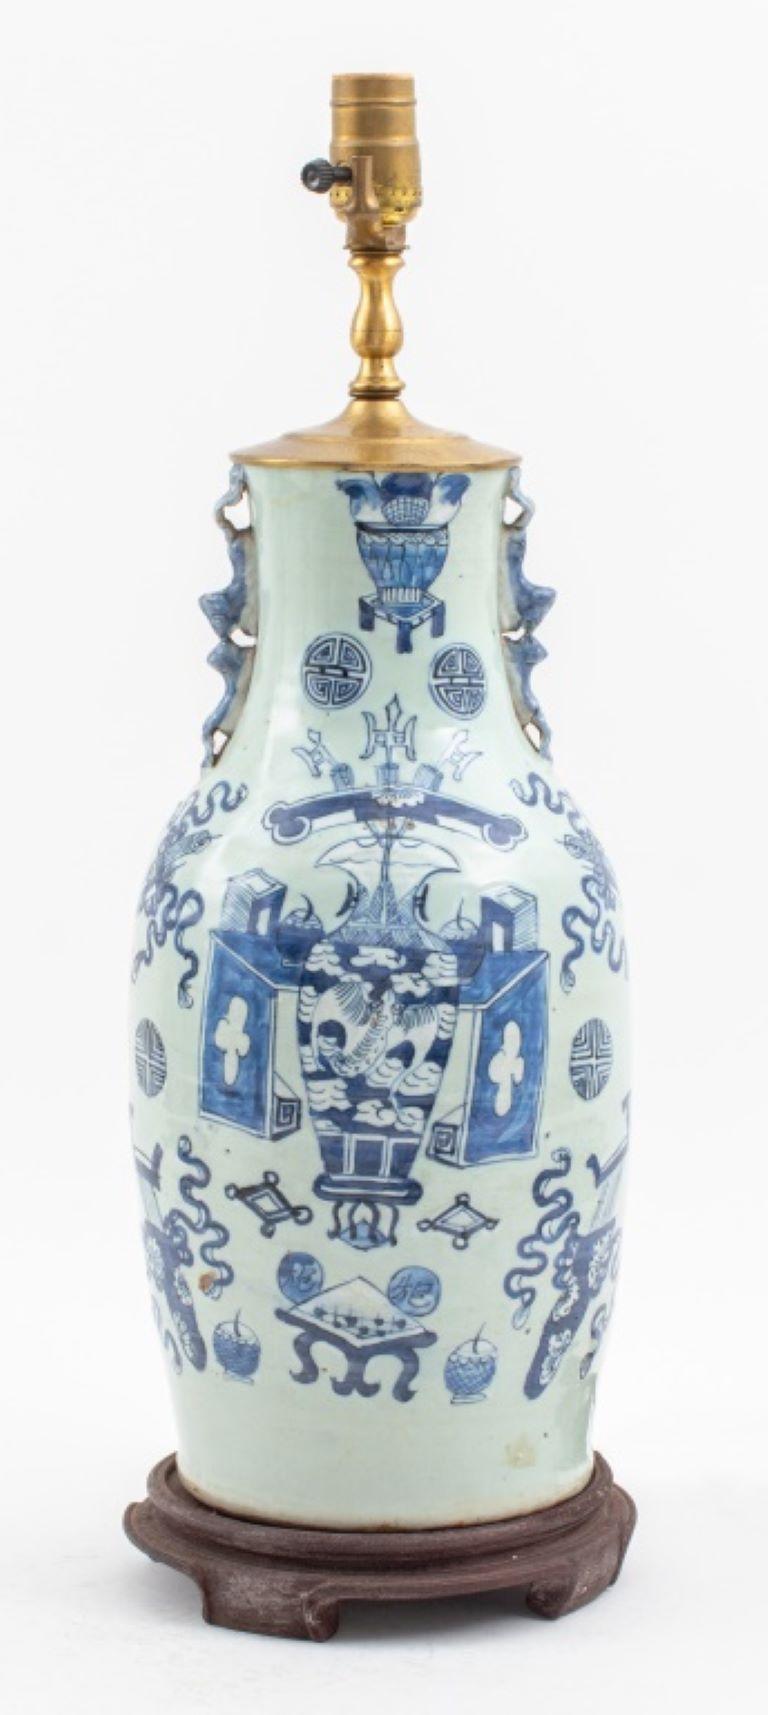 Lampe montée sur vase en porcelaine chinoise bleu céladon